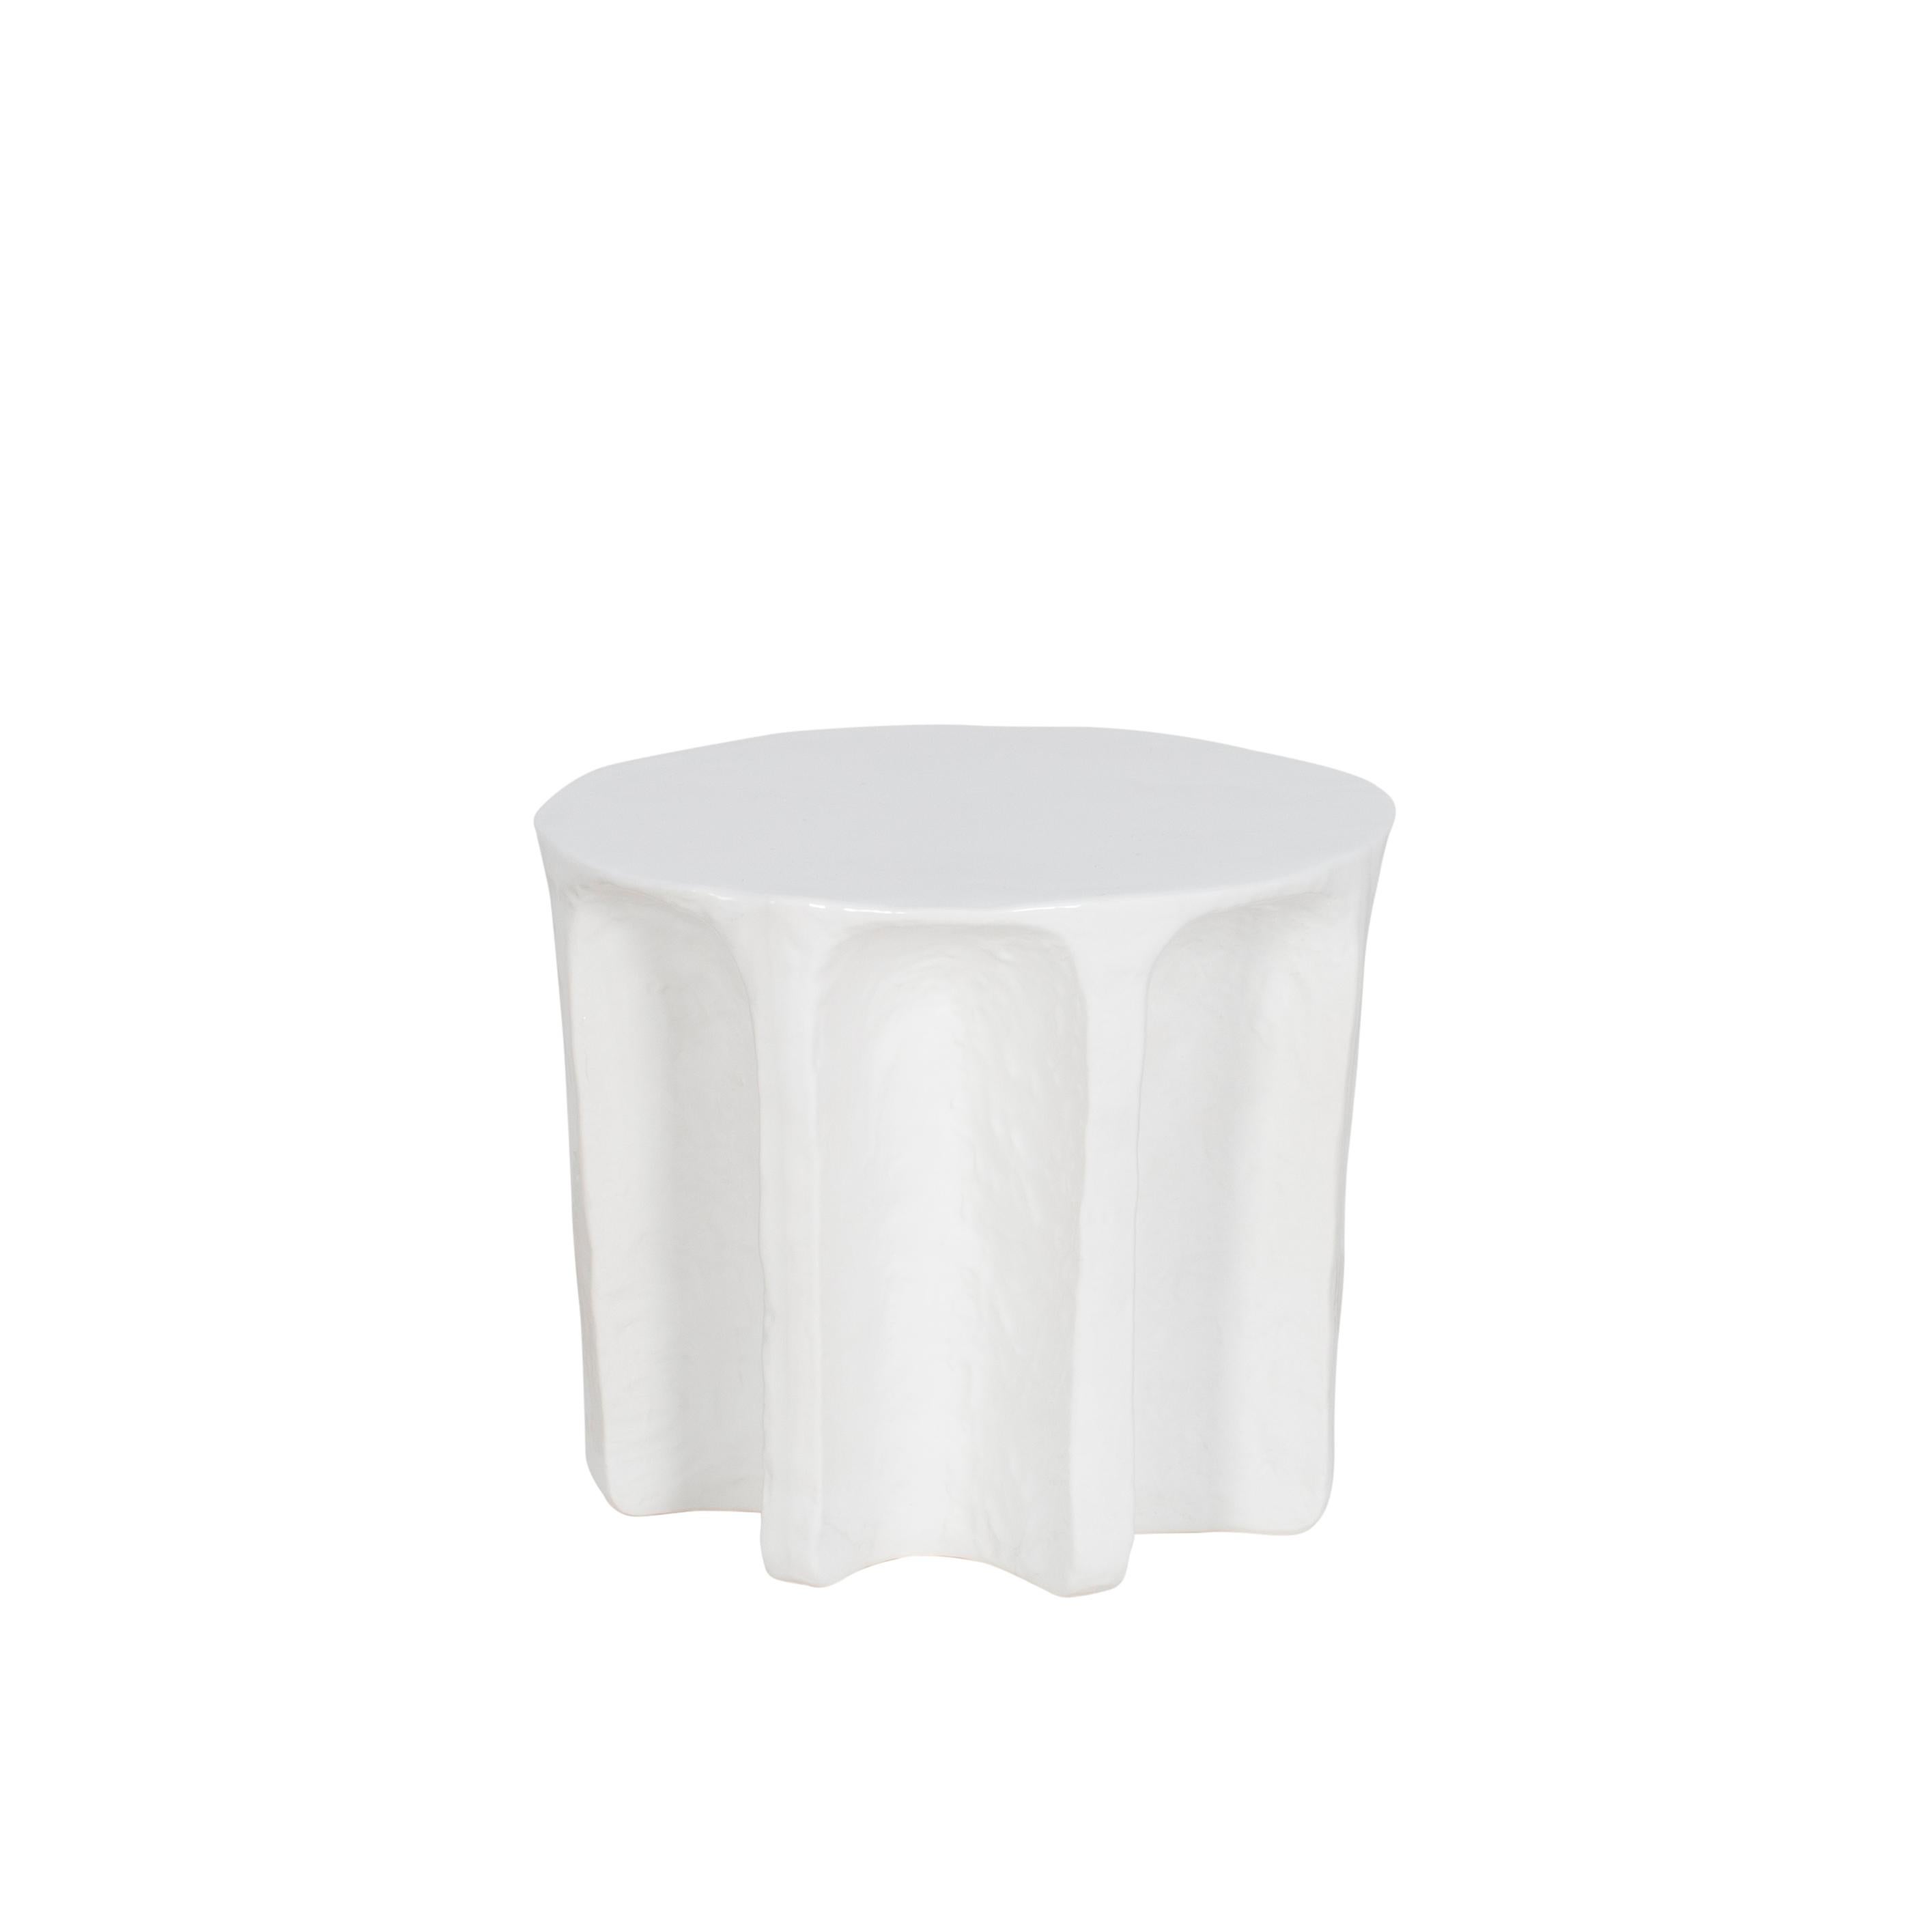 Table basse ronde blanche Whiting de Pulpo
Dimensions : D 55 x H 45 cm
Matériaux : céramique

Également disponible en différentes couleurs.

Chouchou porte les contours d'une colonne antique - ce qui, connaissant le designer Lorenzo Zanovello, est